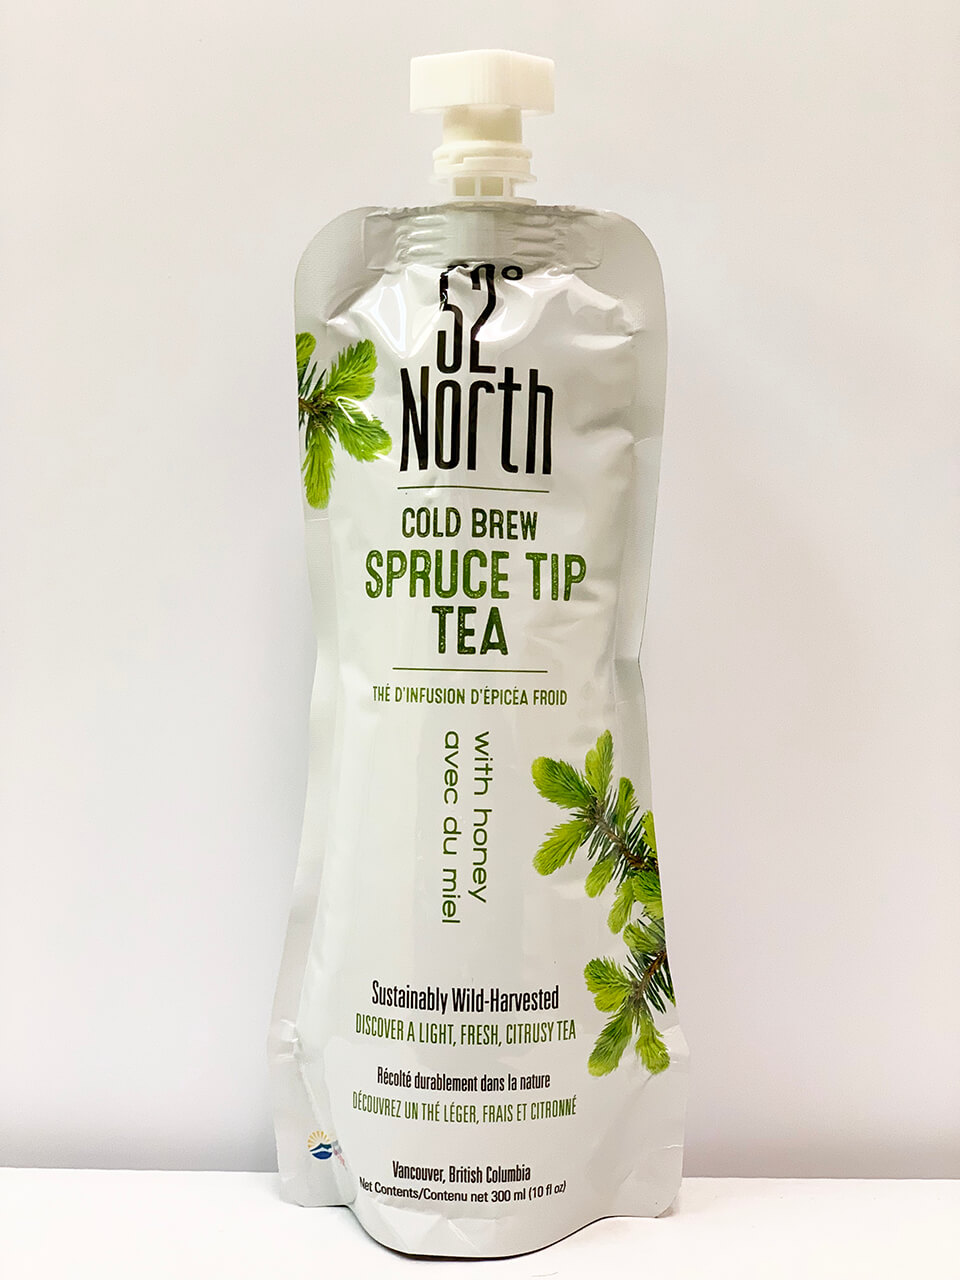 52º North – Cold Brewed Spruce Tip Tea